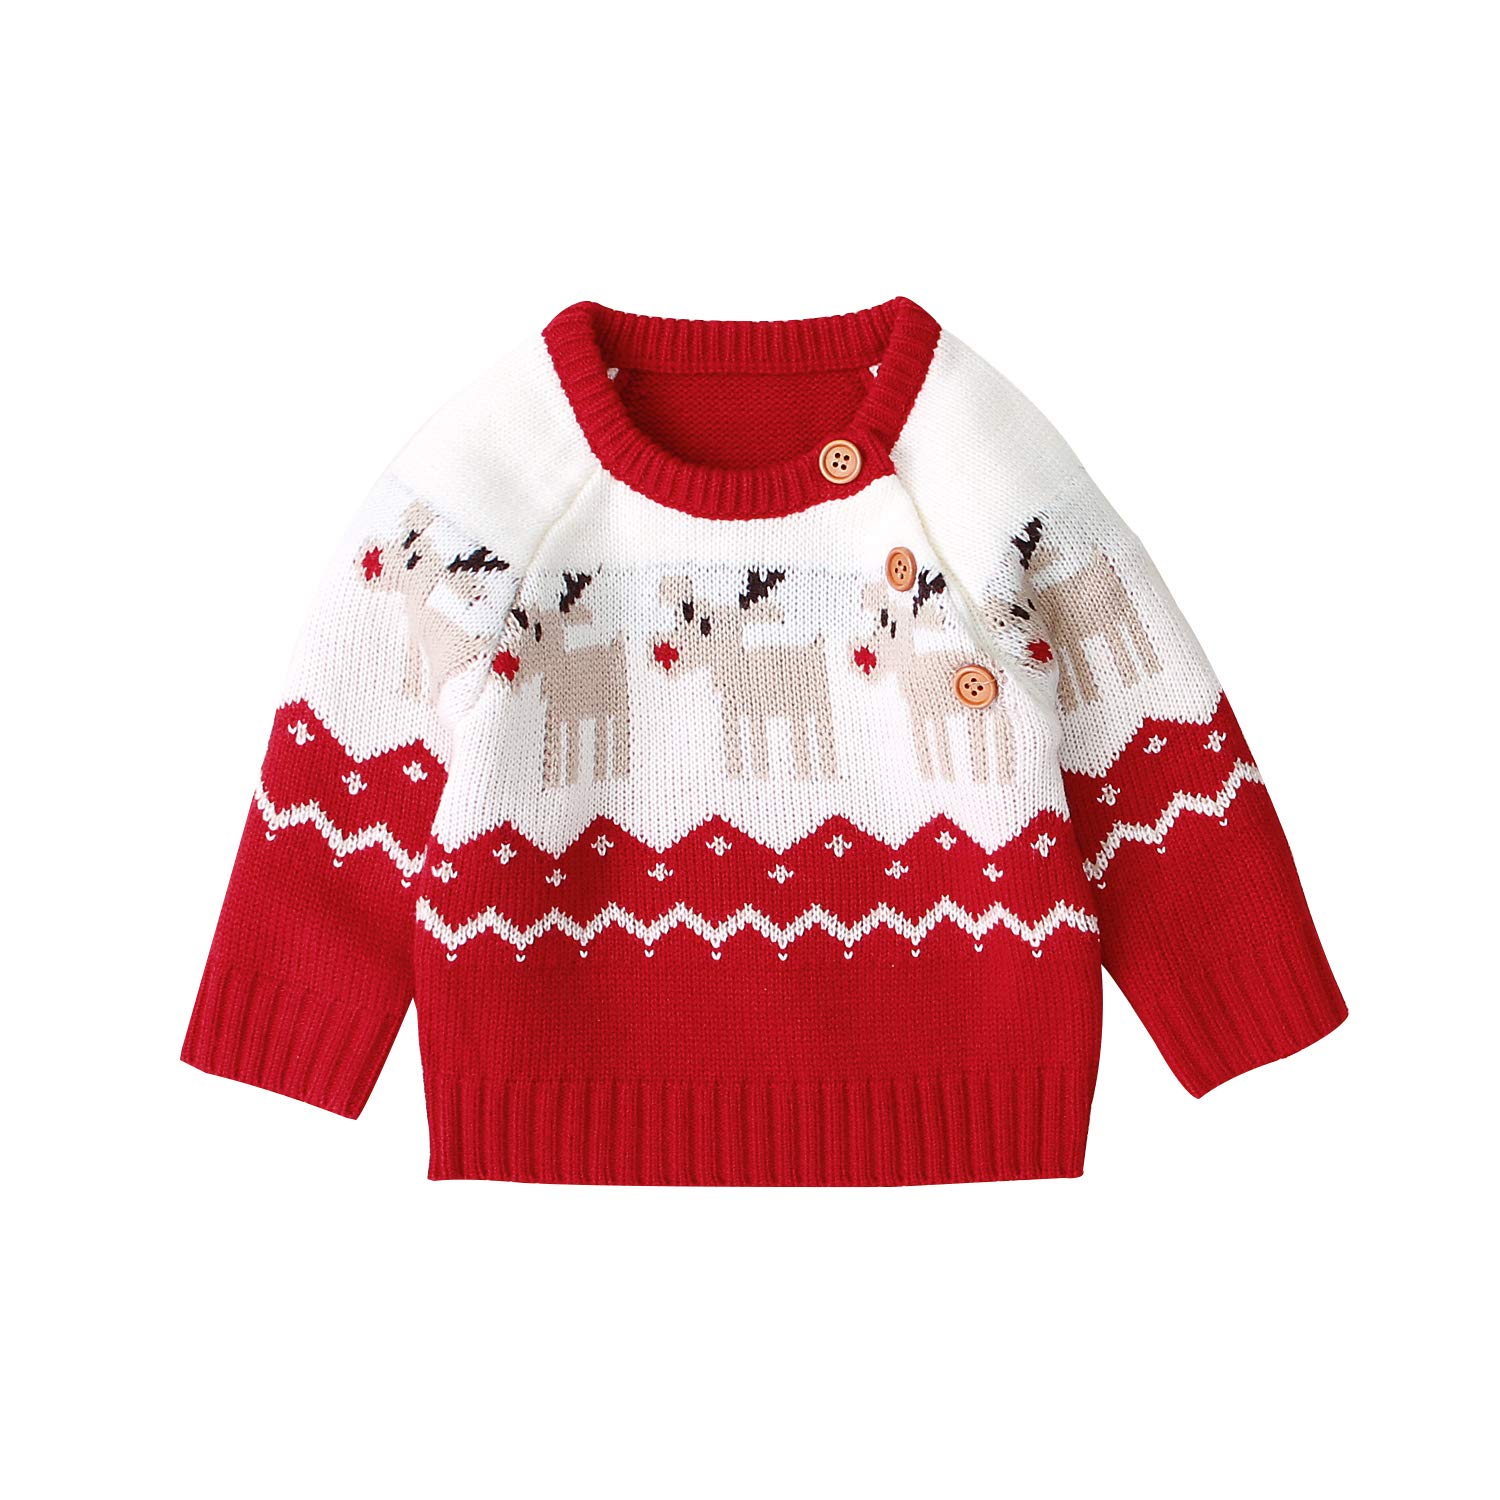 WangsCanis Neugeborene Baby Weihnachtspullover Kleinkind Baby Jungen Mädchen Langarm Warm Strickpullover Weihnachten Rentier Top Kleidung (Rot, 0-3 Monate)